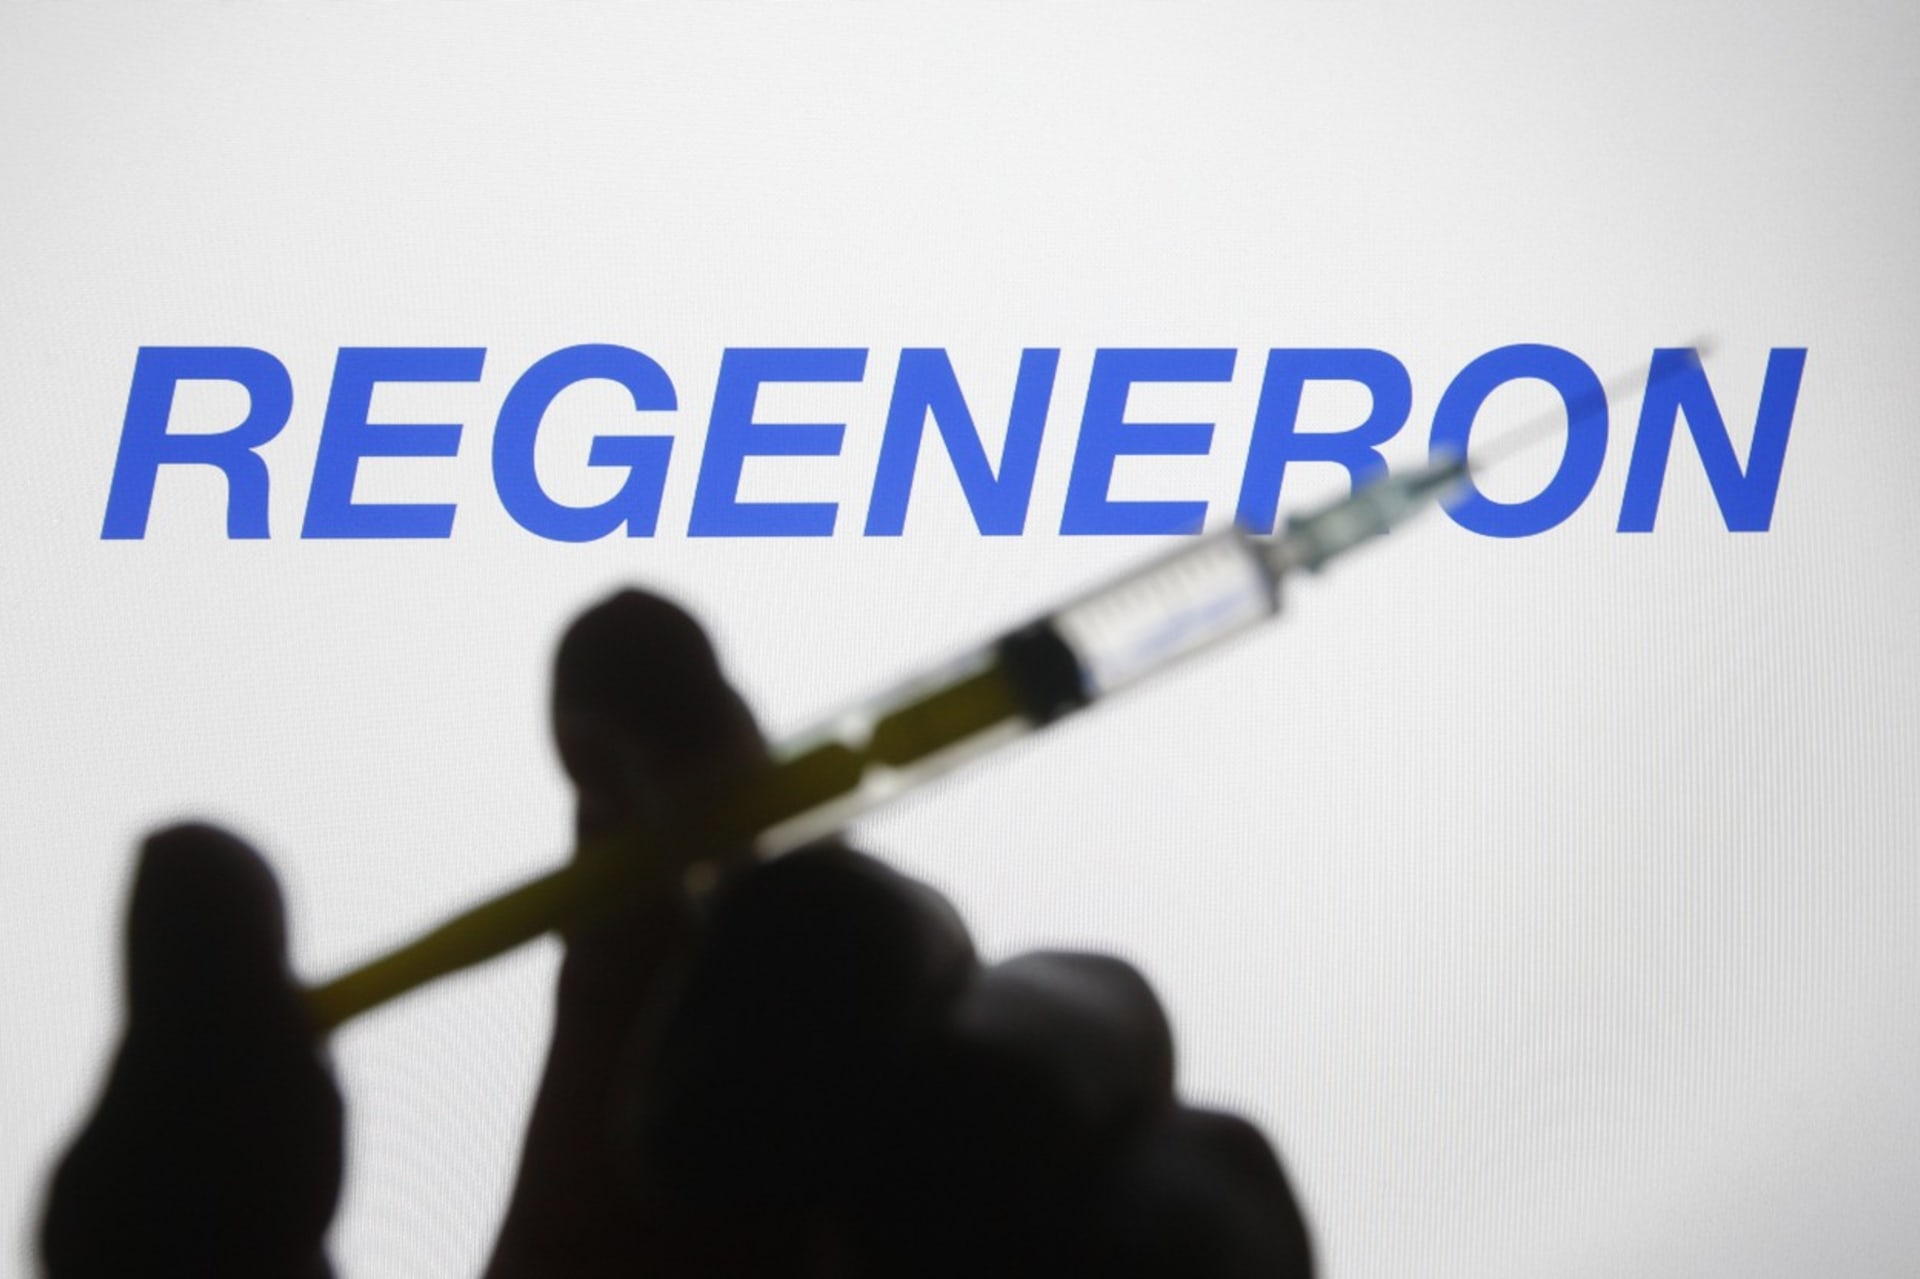 Lék od firmy Regeneron, který je určený na léčbu koronaviru, mají od úterý k dispozici fakultní nemocnice v Brně a Praze.